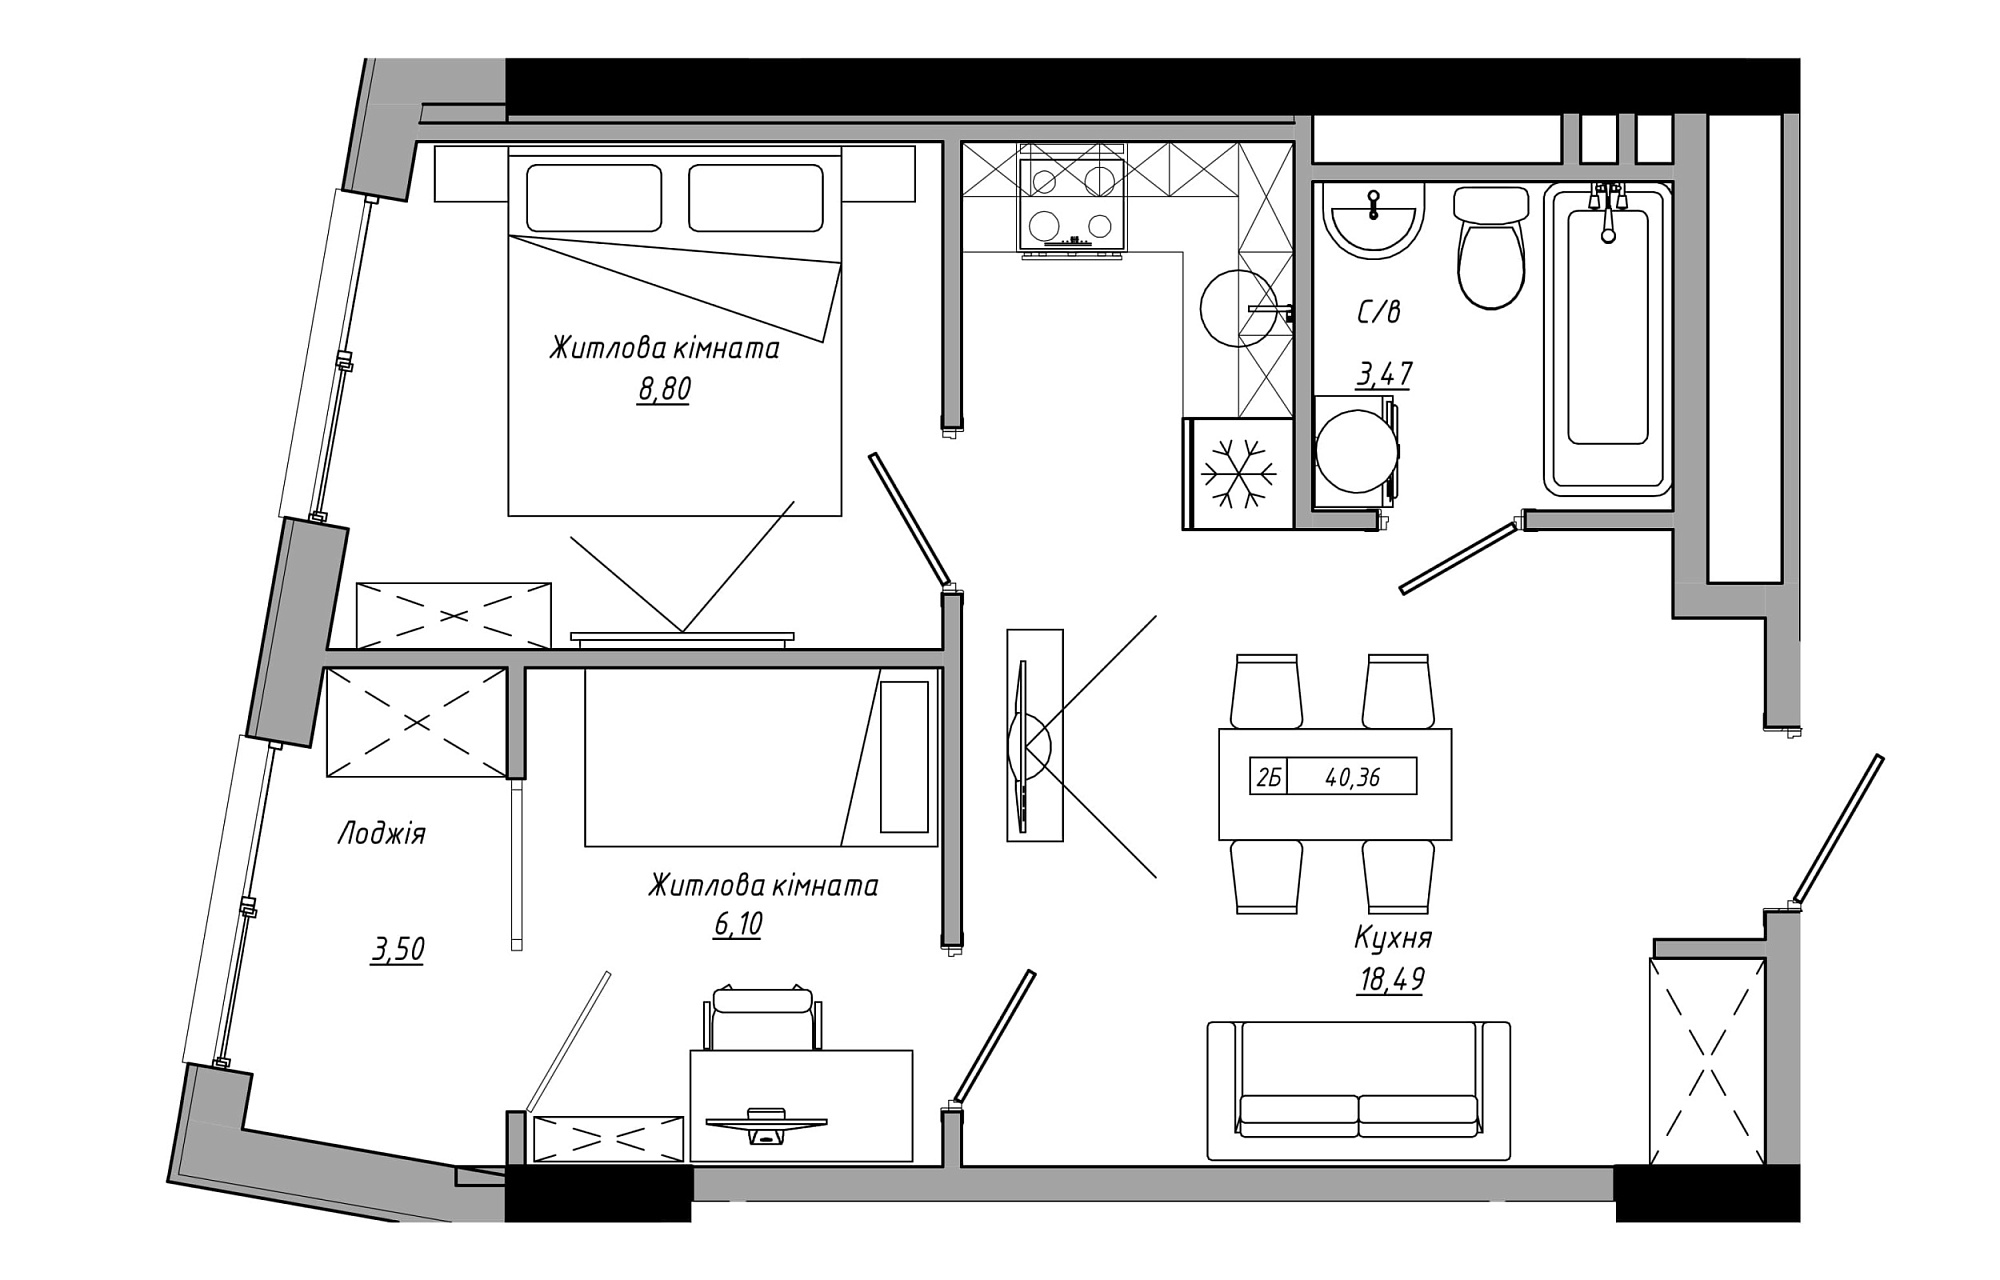 Планування 2-к квартира площею 40.36м2, AB-21-14/00107.